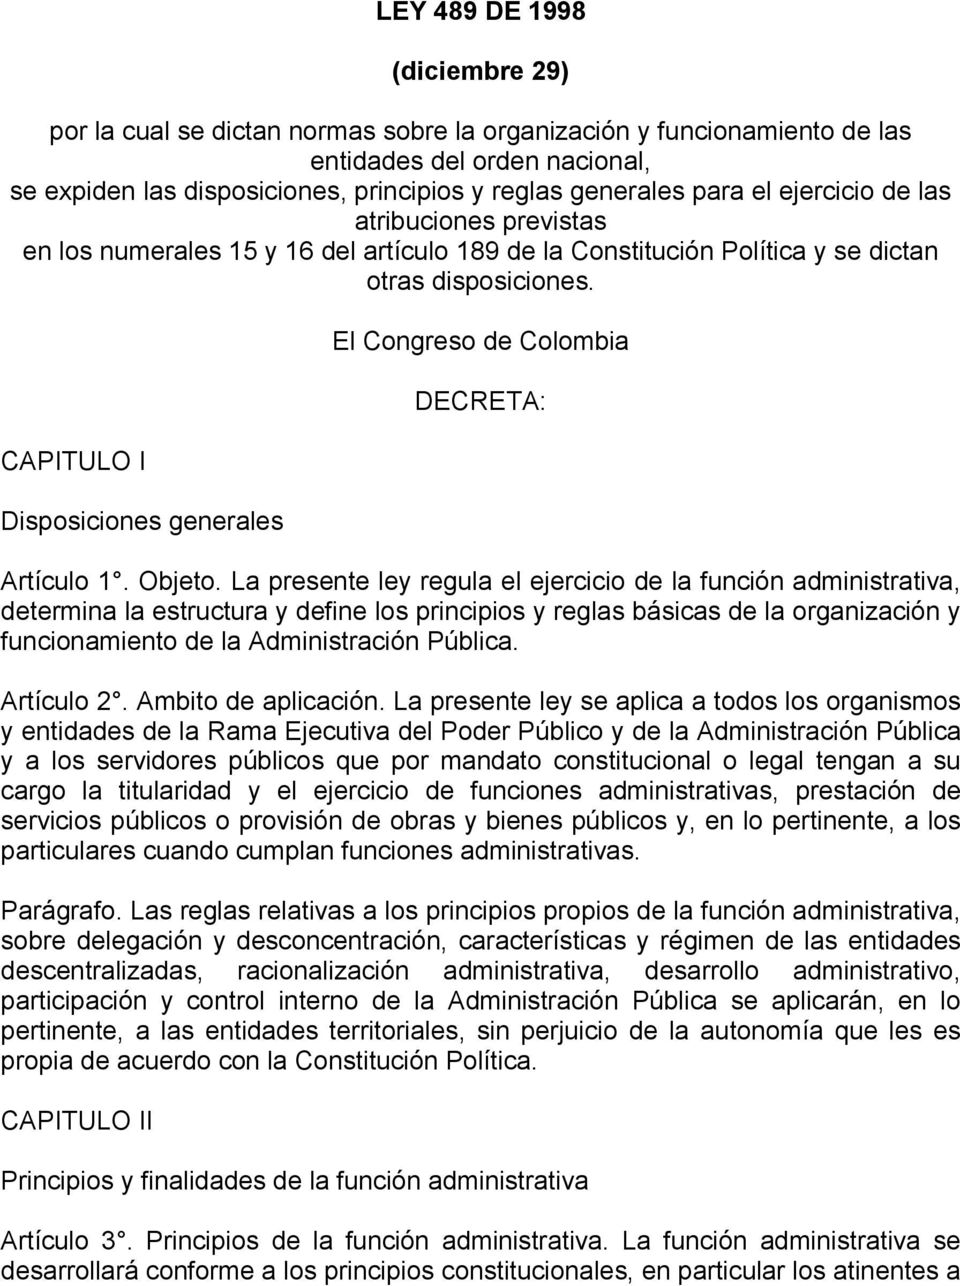 CAPITULO I Disposiciones generales El Congreso de Colombia DECRETA: Artículo 1. Objeto.